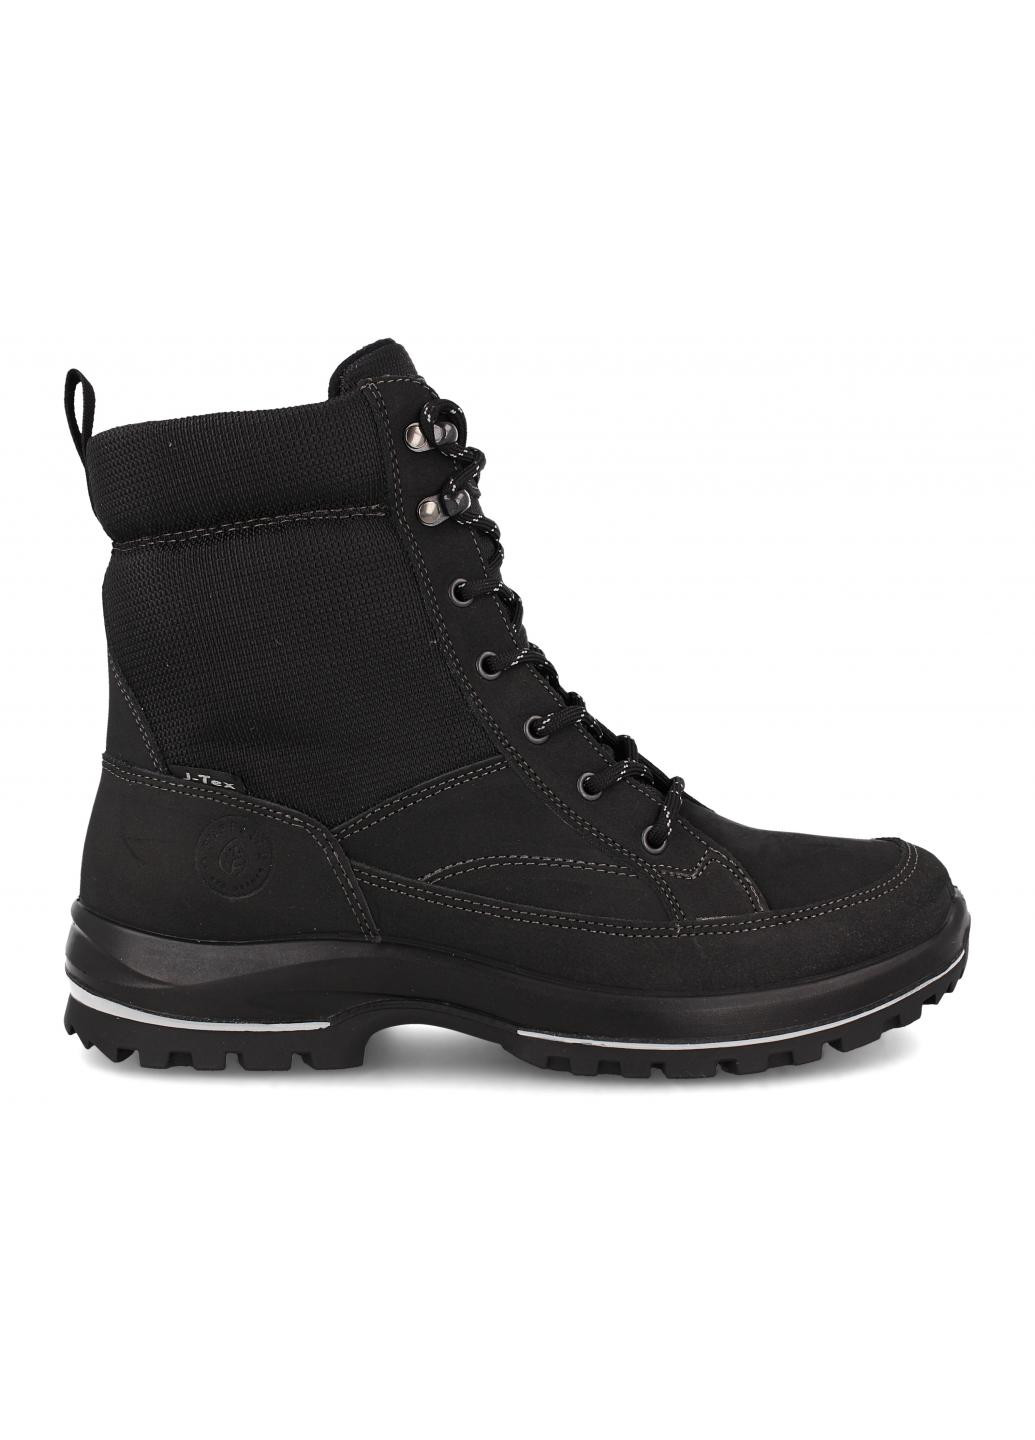 Черные зимние мужские ботинки norway flag cordura 3435-10 made in europe Forester